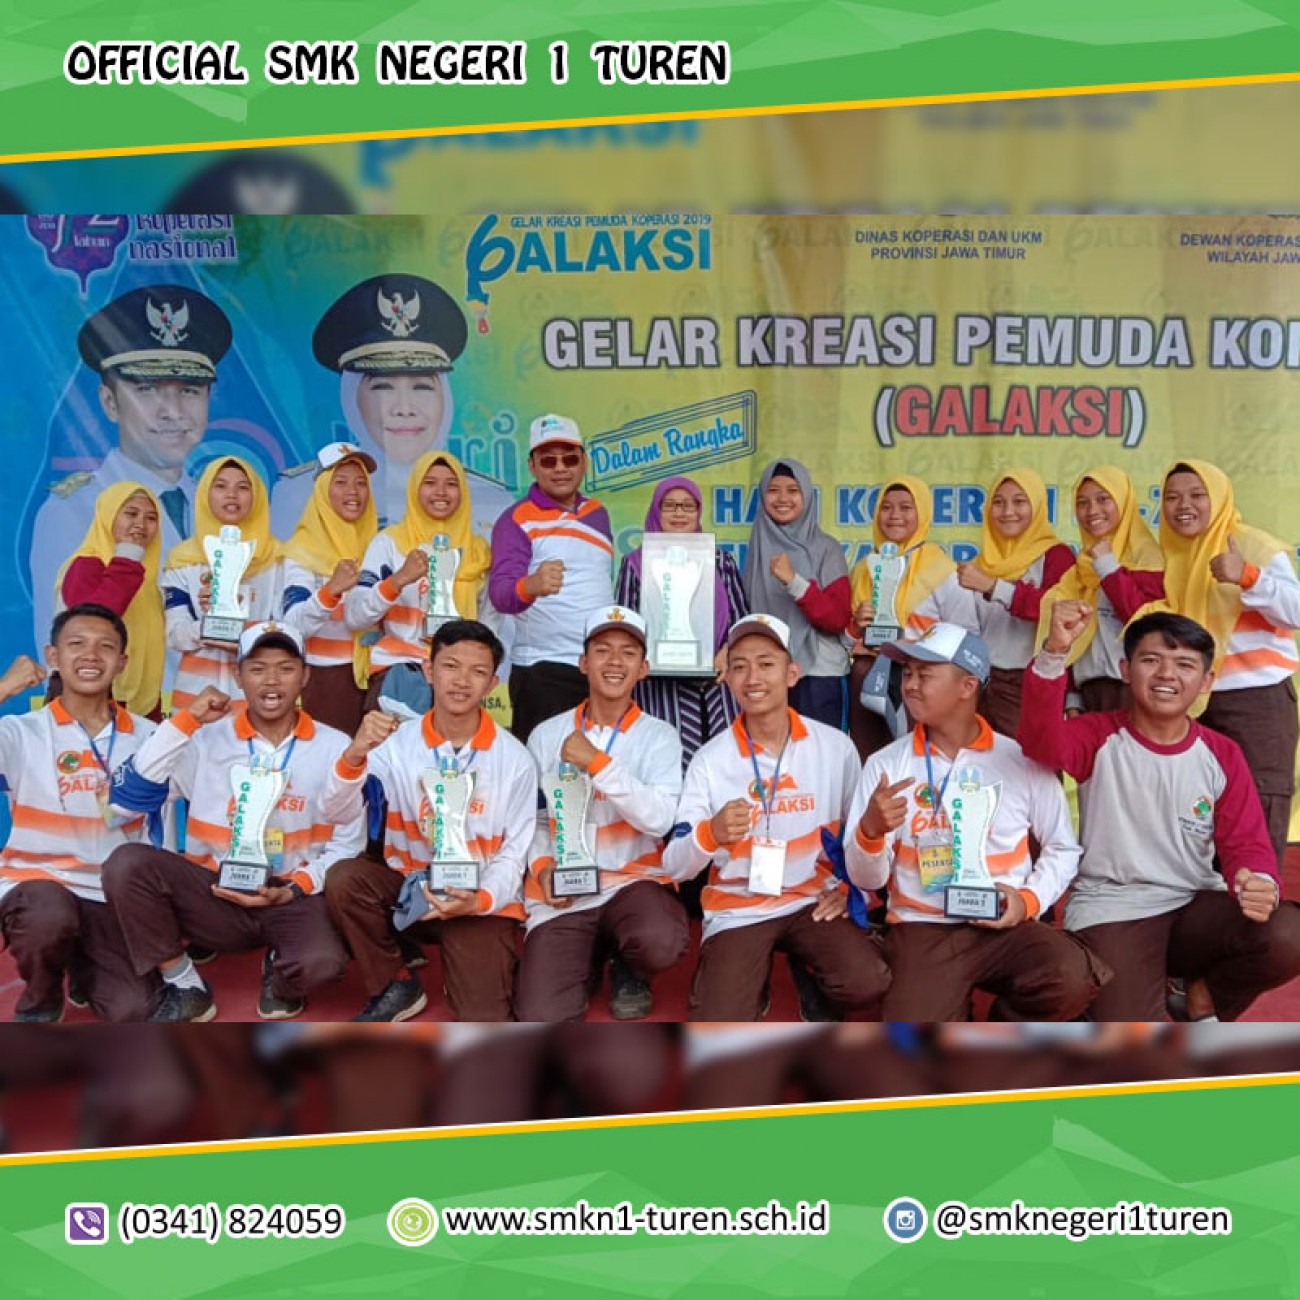 Tim Kopsis SMK Negeri 1 TUREN Meraih JUARA UMUM dan 8 TROPY pada ajang GALAKSI 2019 Tingkat Provinsi Jawa Timur